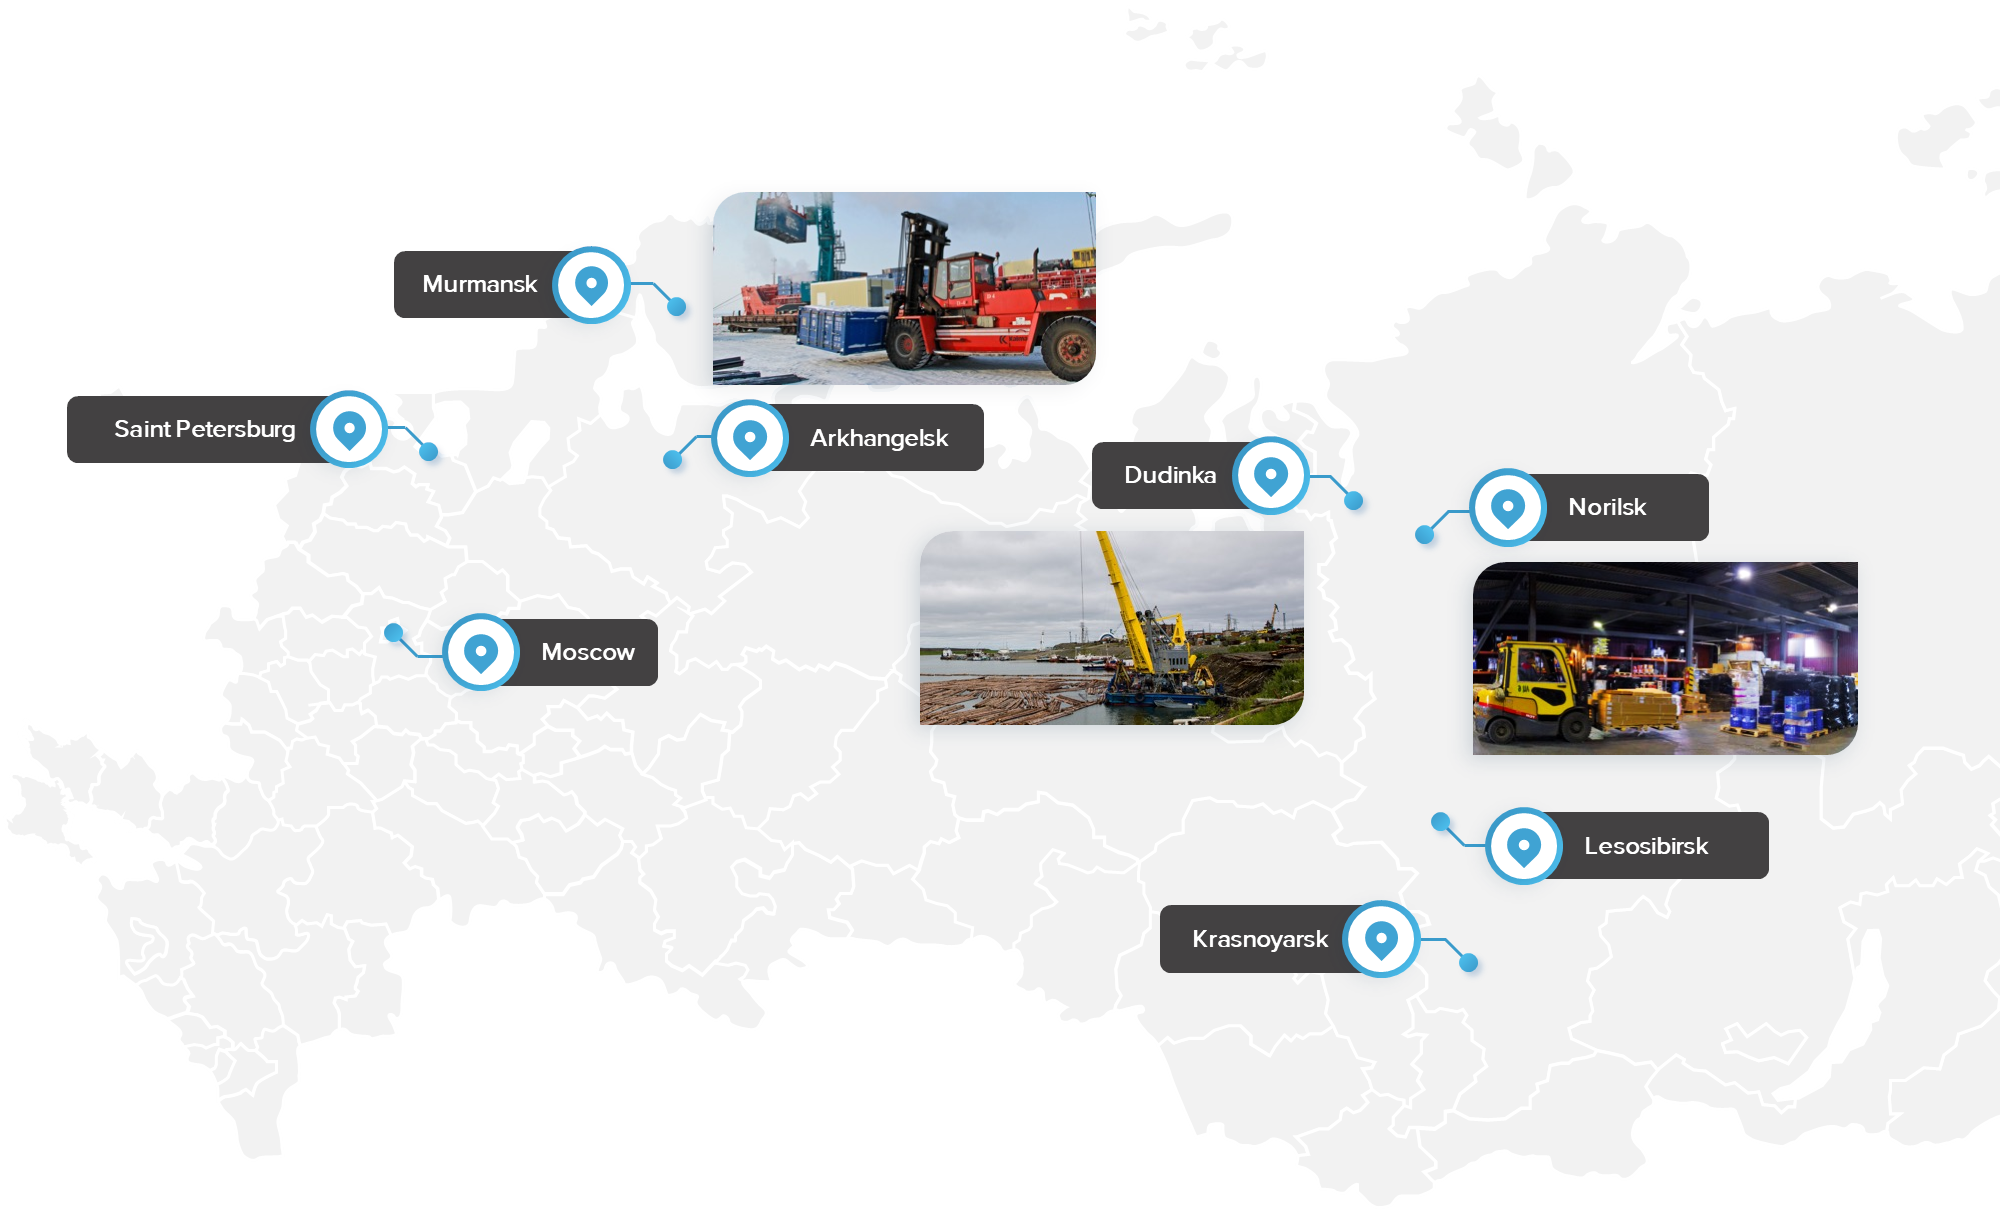 Geography of presence: Moscow, St. Petersburg, Norilsk, Dudinka, Murmansk, Krasnoyarsk, Arkhangelsk, Lesosibirsk